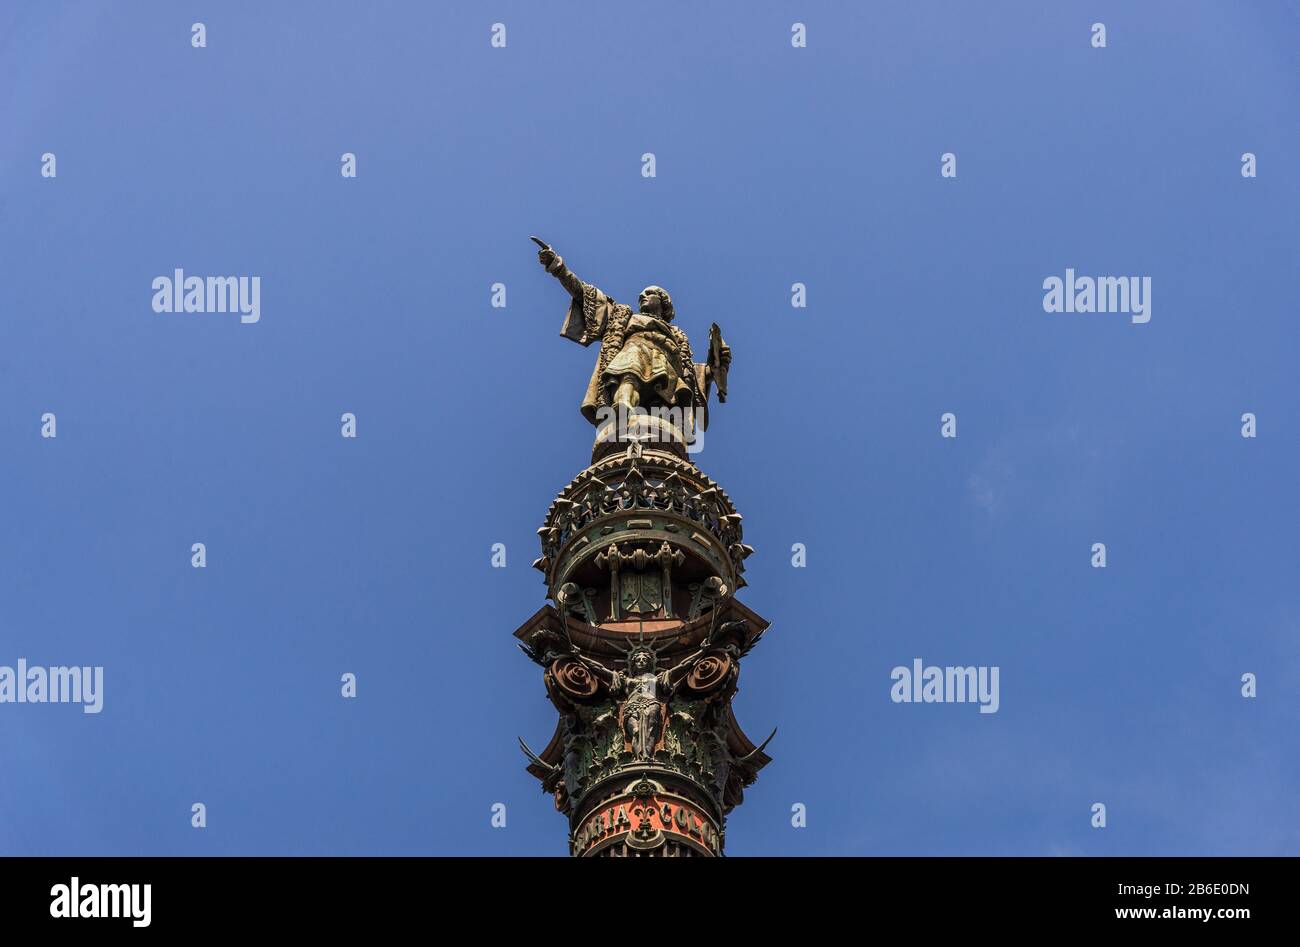 Monument à Columbus dans la zone portuaire de Barcelone, Espagne. Banque D'Images